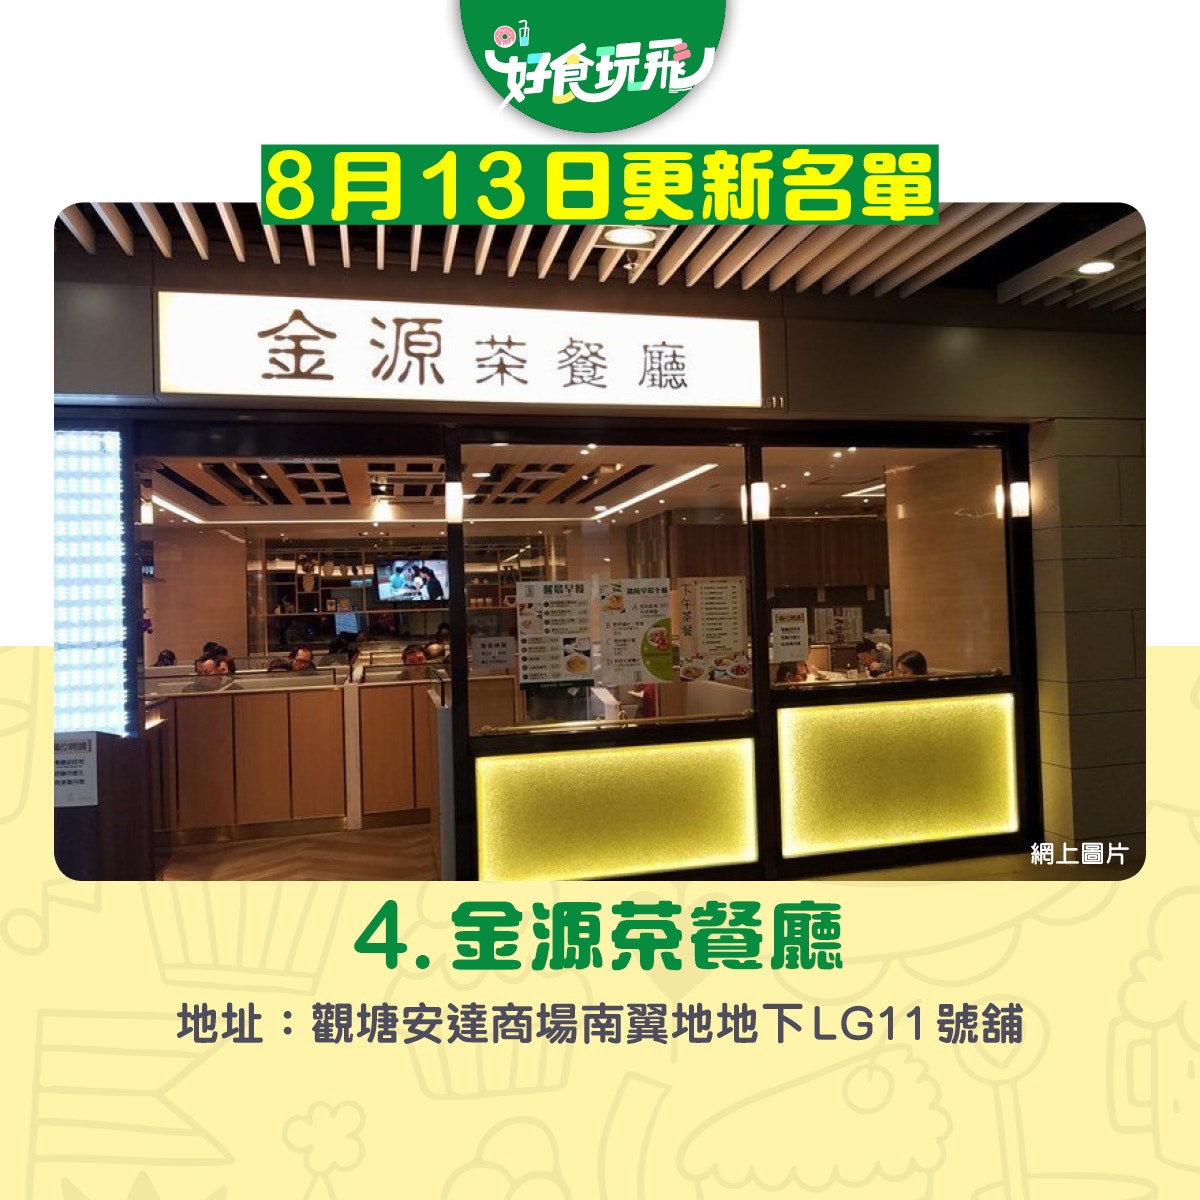 九龍東105間確診者到訪食肆商場曉麗商場 秀茂坪商場 持續更新 香港01 食玩買